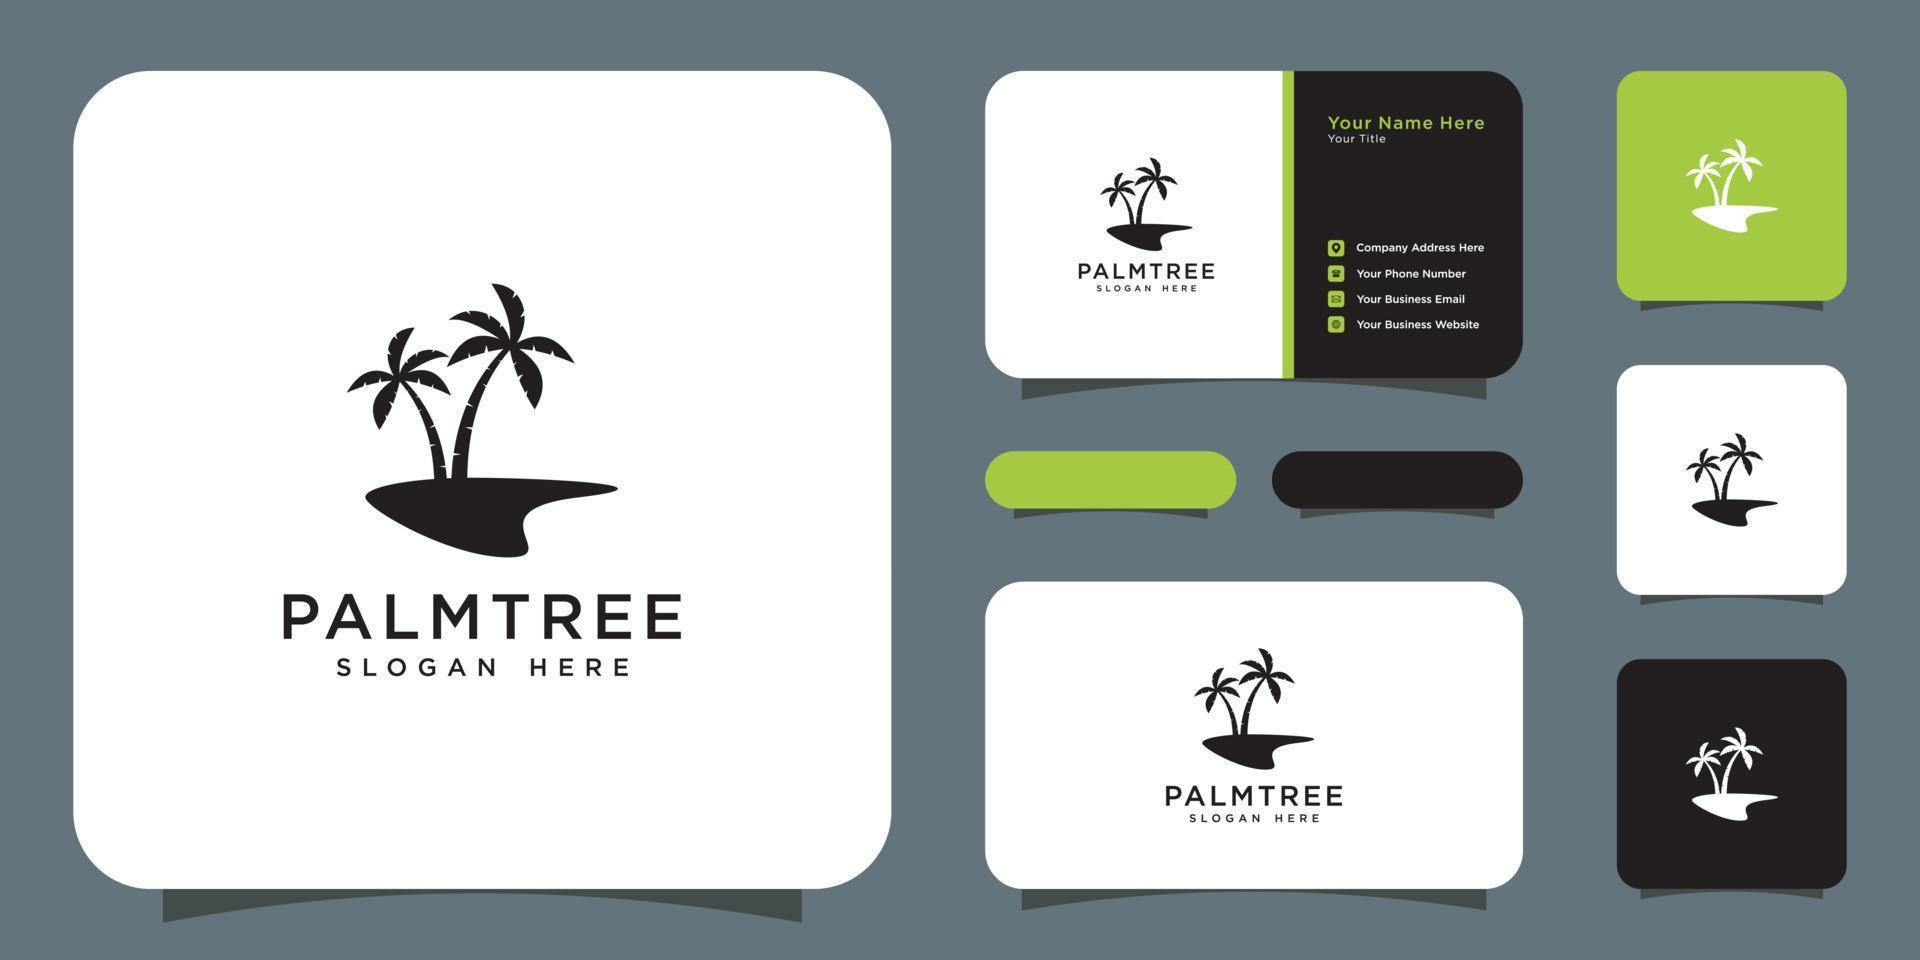 palmträd logotyp vektor design och visitkort